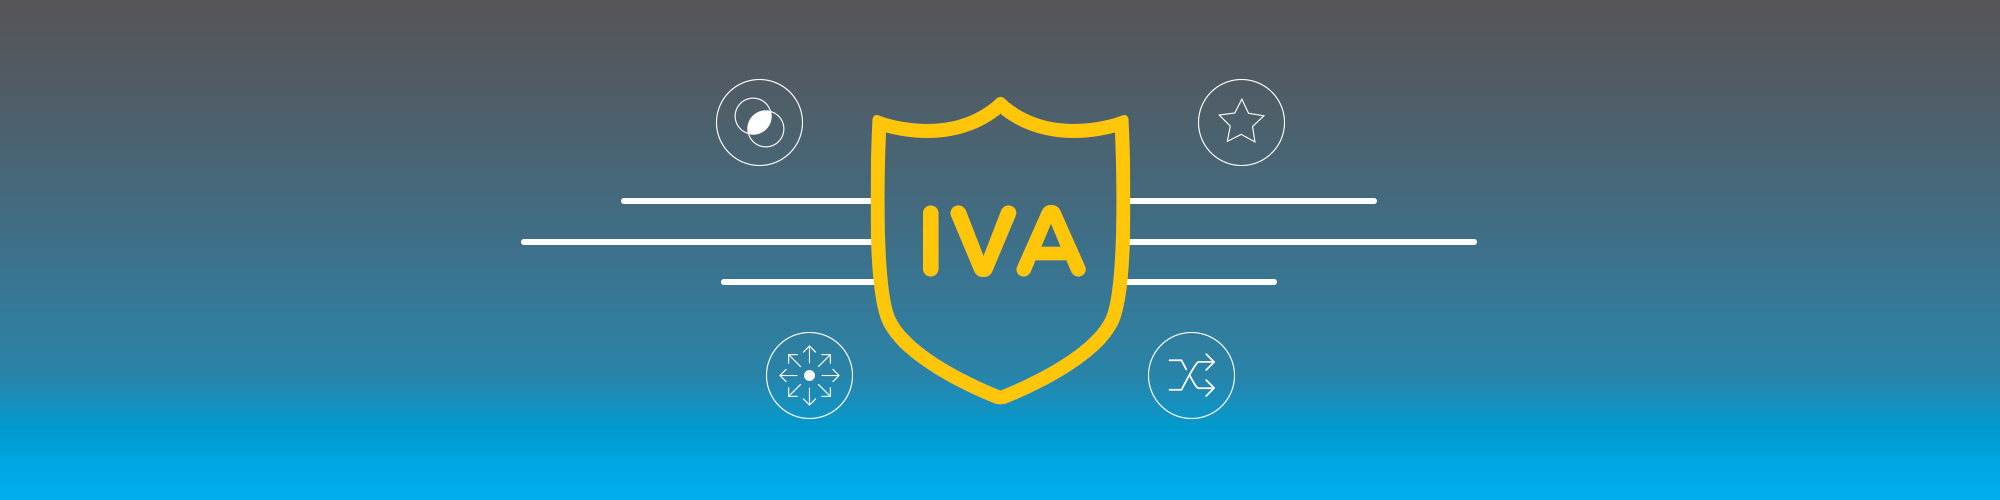 IVA Banner